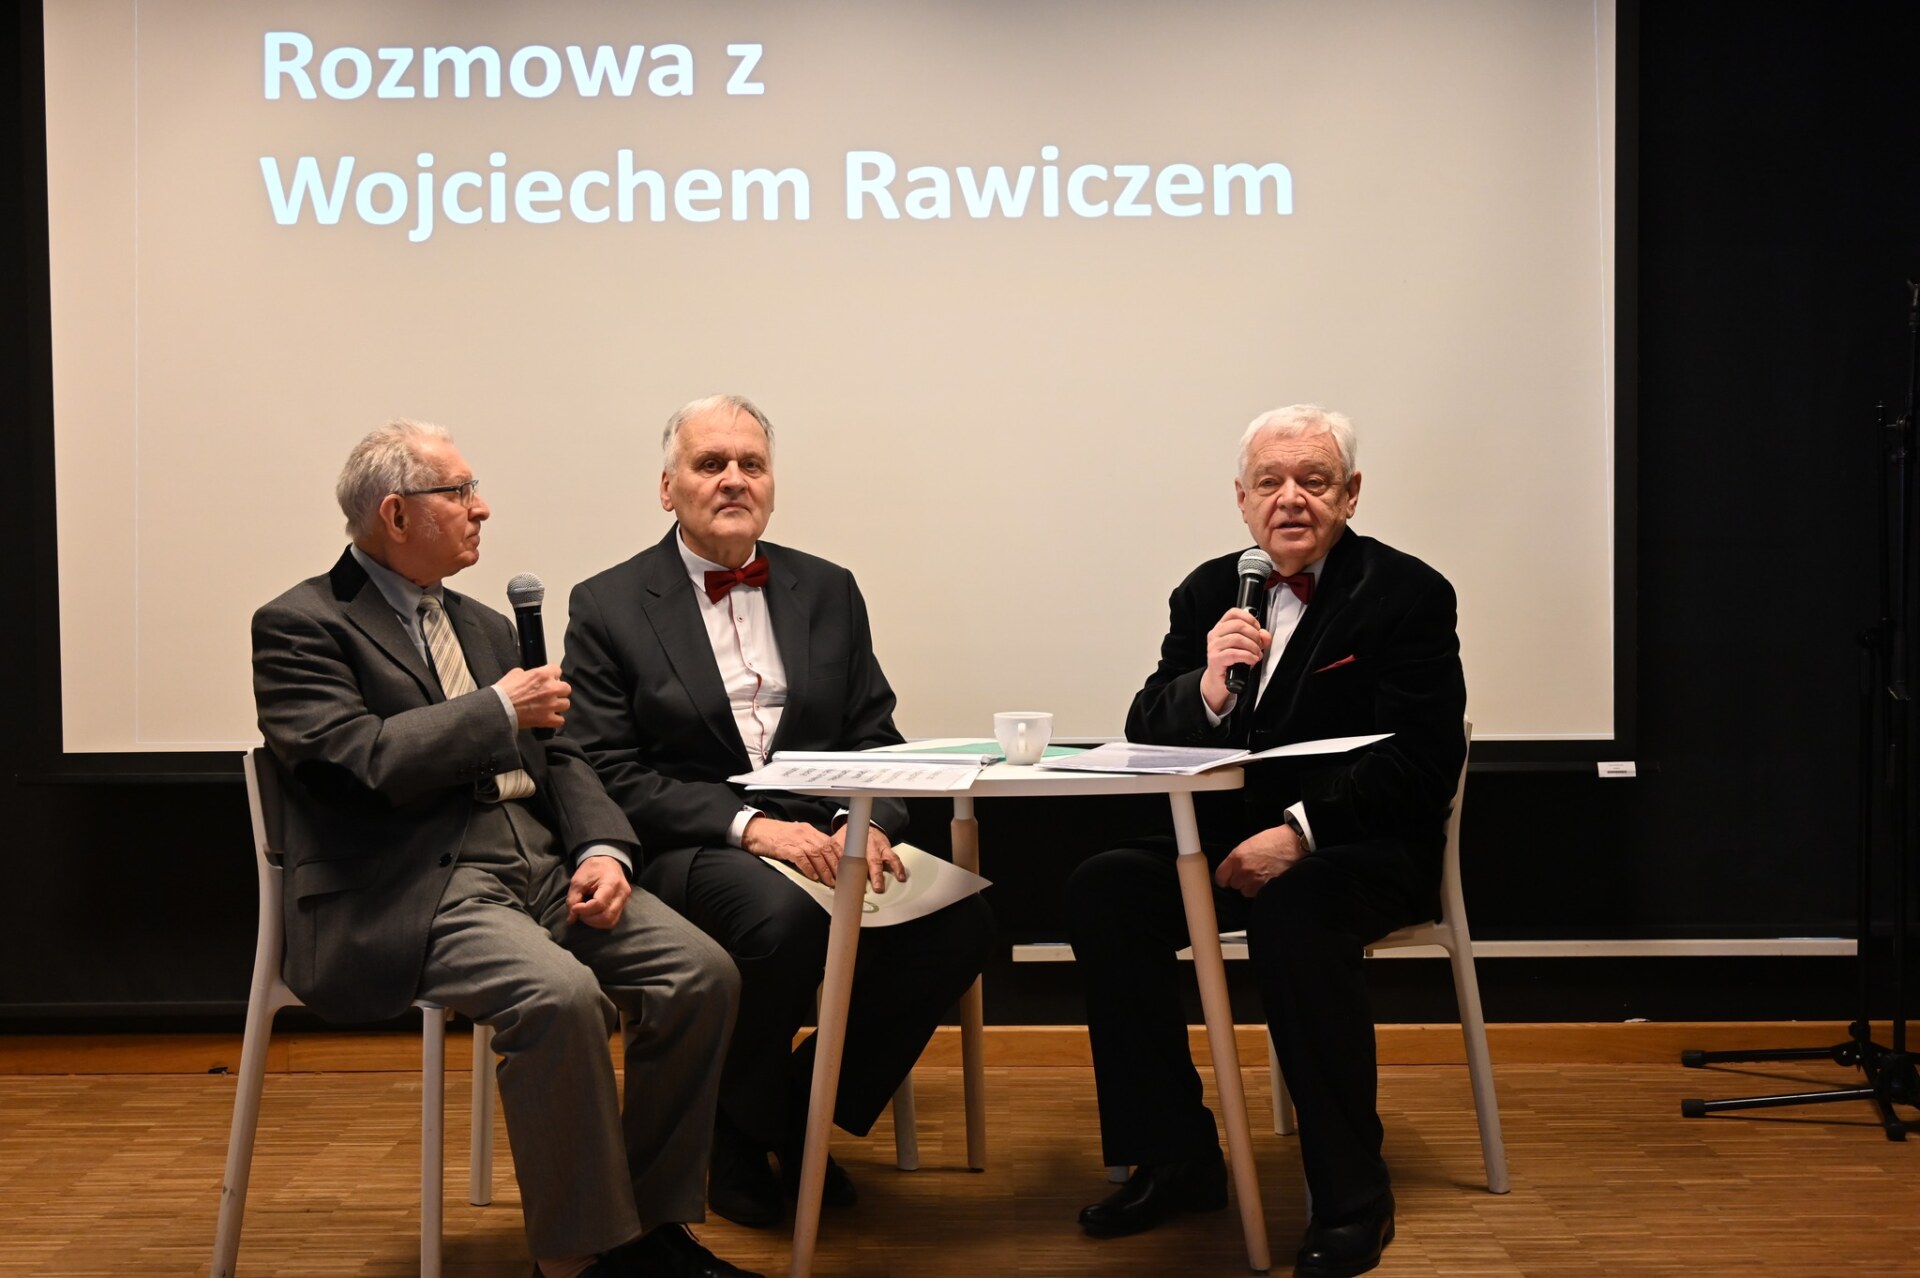 Trzej seniorzy siedzą na scenie przy stoliku, w tle napis "Rozmowa z Wojciechem Rawiczem"